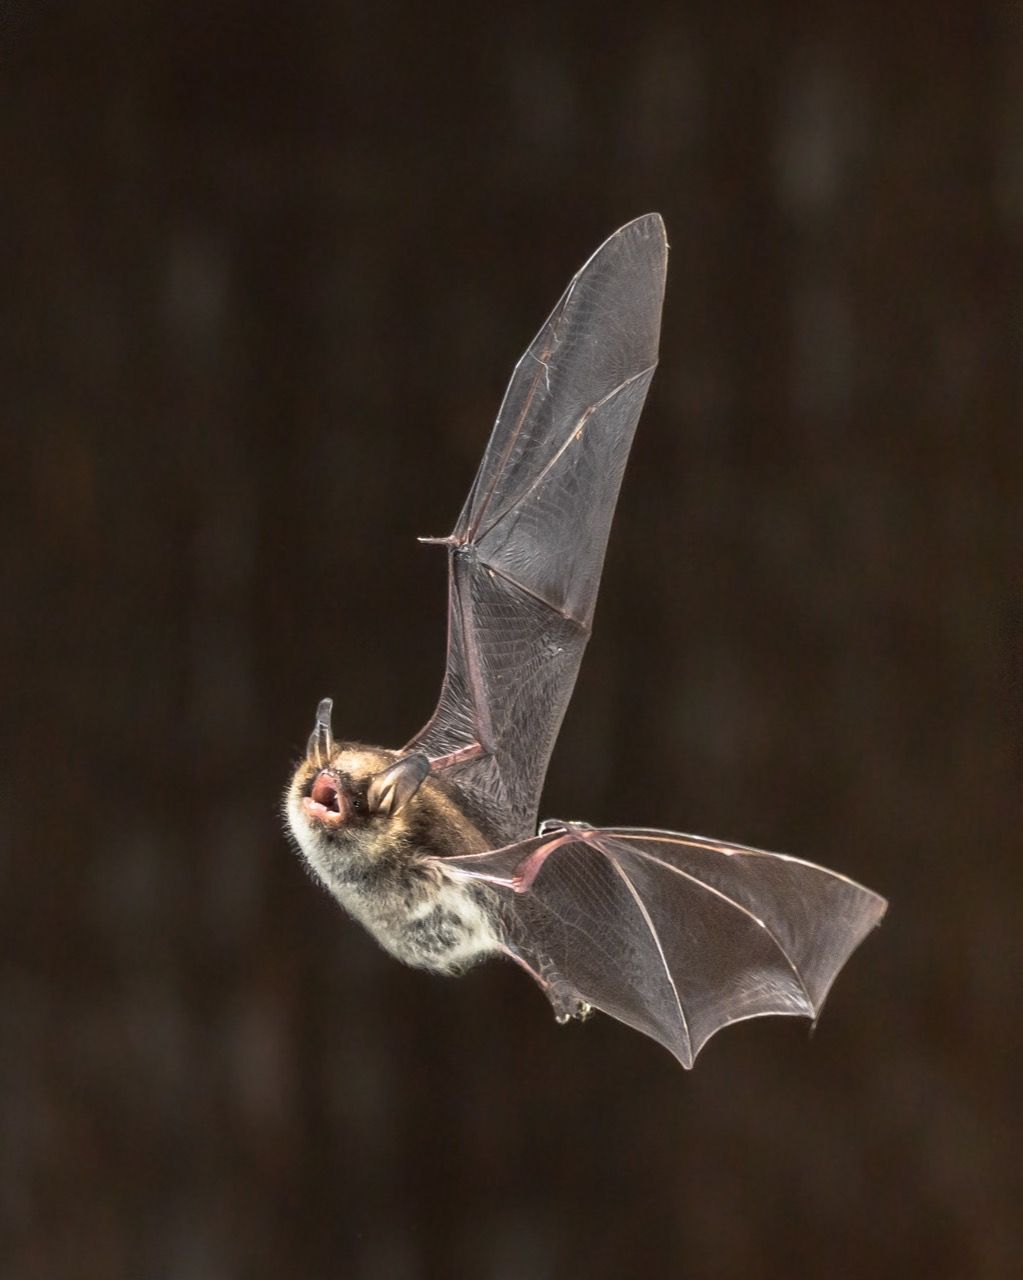 Vampyrų šikšnosparnių faktai apie gyvenimą